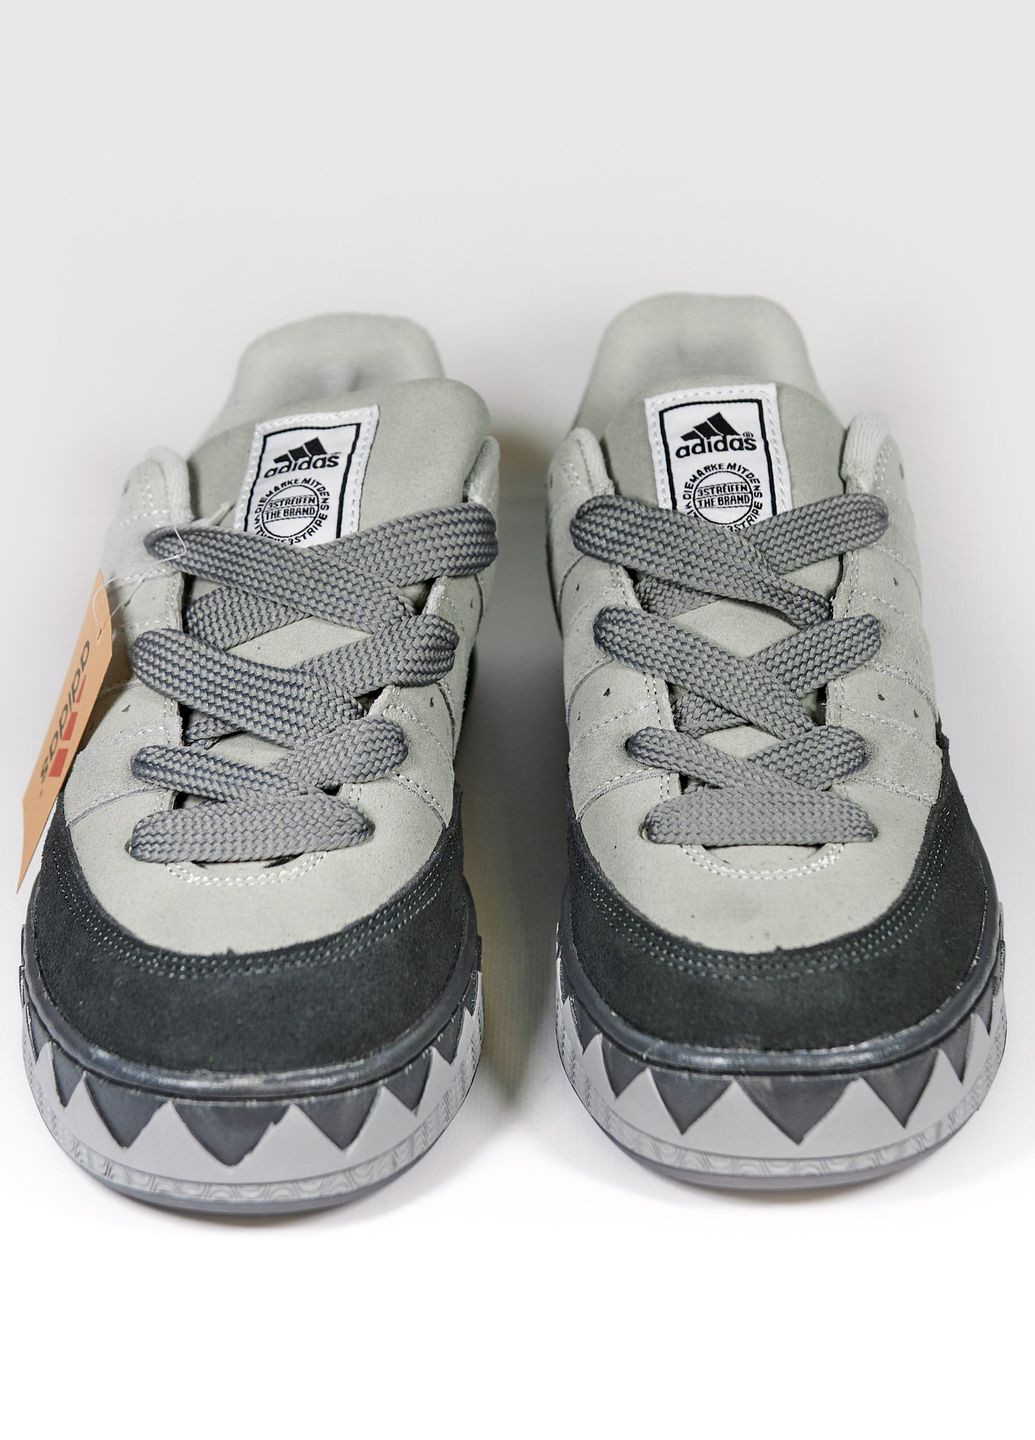 Серые демисезонные кроссовки мужские grey, вьетнам adidas Adimatic Neighborhood